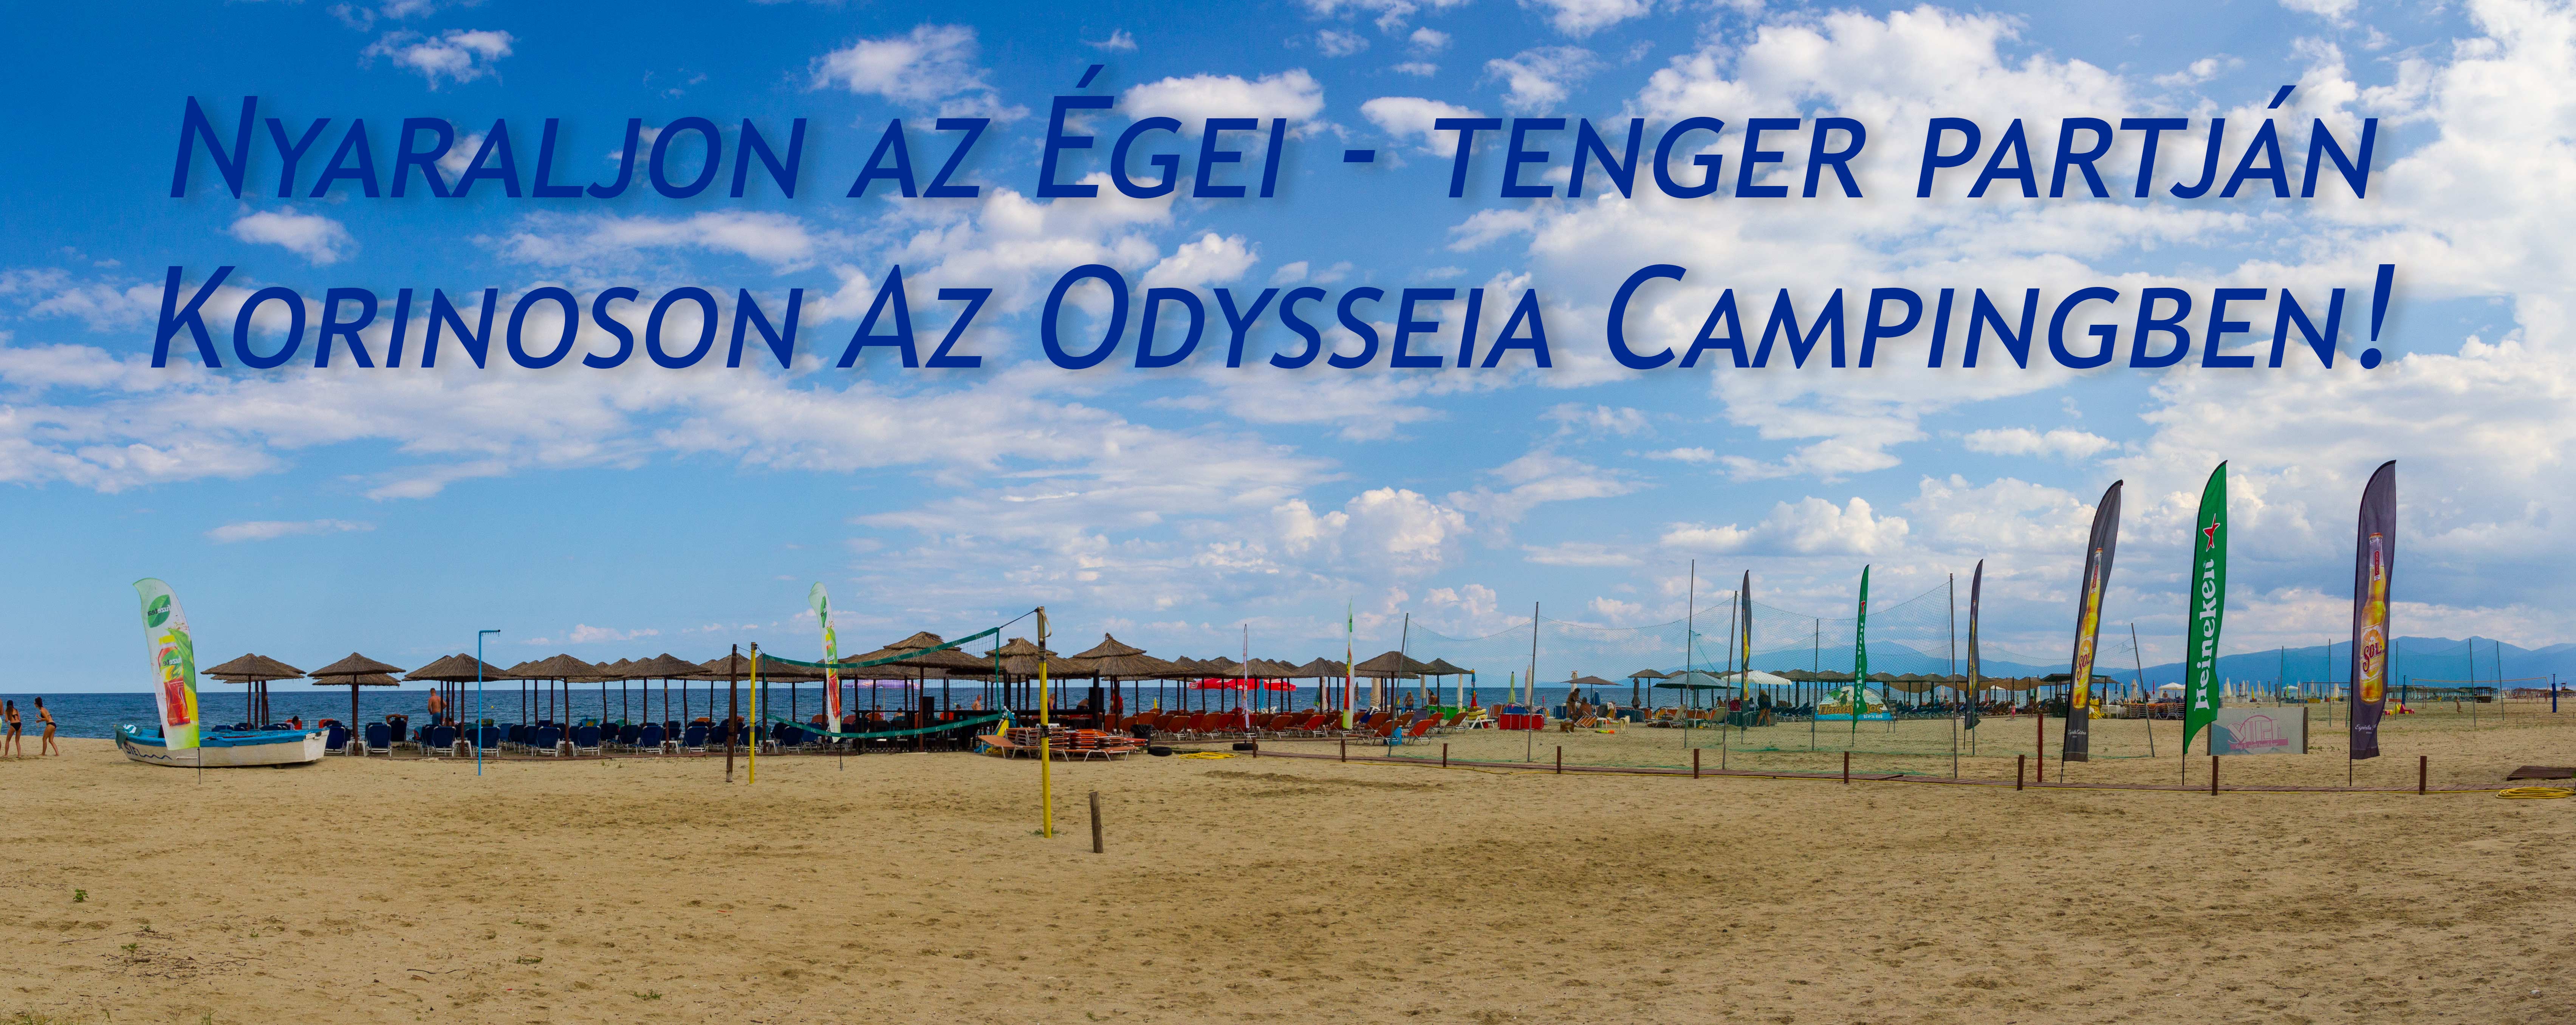 Nyaraljon az lakókocsiban Görögországban Korinoson az Odysseia Campingben!